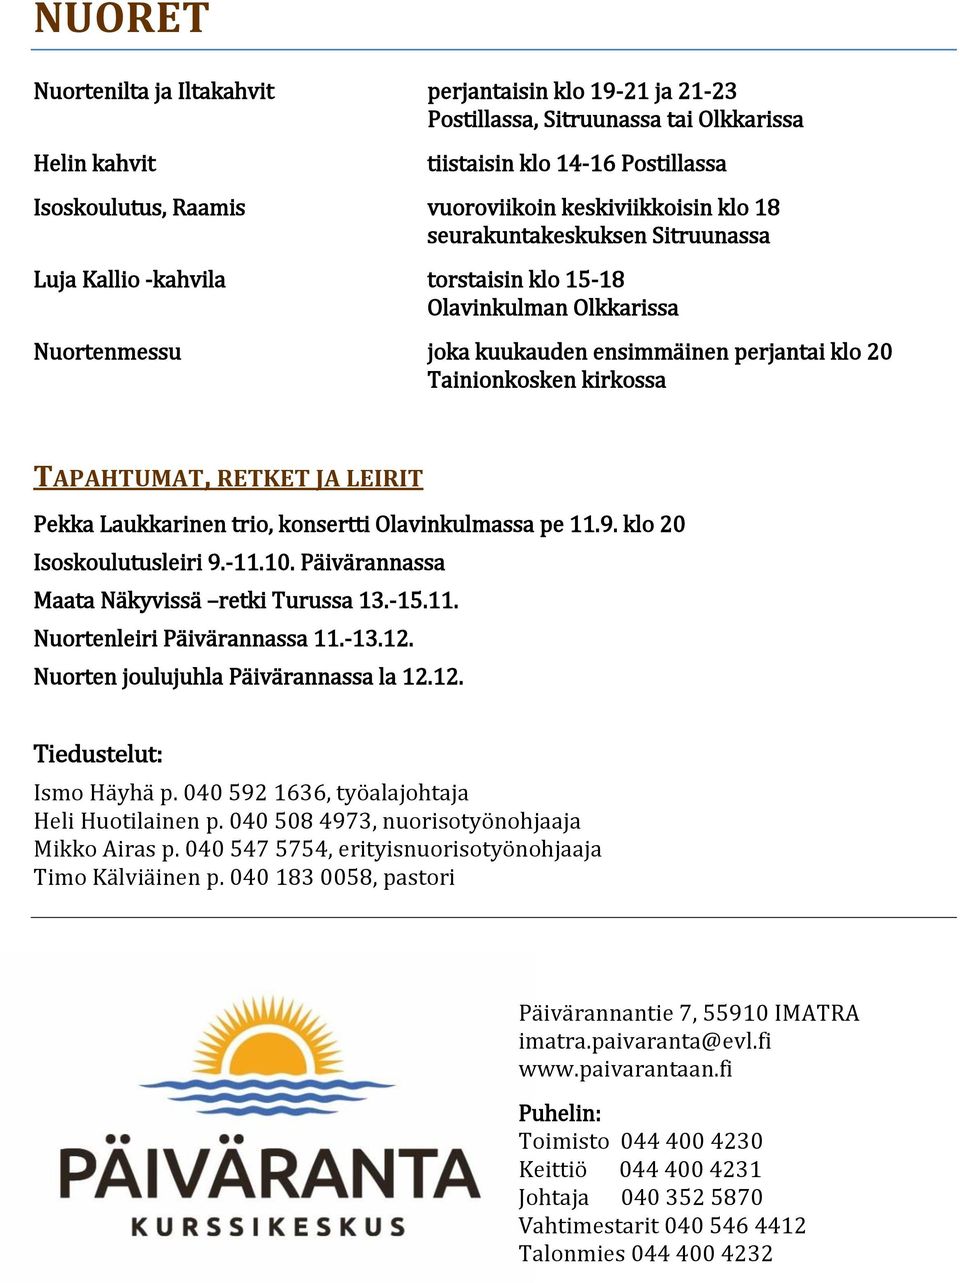 kirkossa TAPAHTUMAT, RETKET JA LEIRIT Pekka Laukkarinen trio, konsertti Olavinkulmassa pe 11.9. klo 20 Isoskoulutusleiri 9.-11.10. Päivärannassa Maata Näkyvissä retki Turussa 13.-15.11. Nuortenleiri Päivärannassa 11.